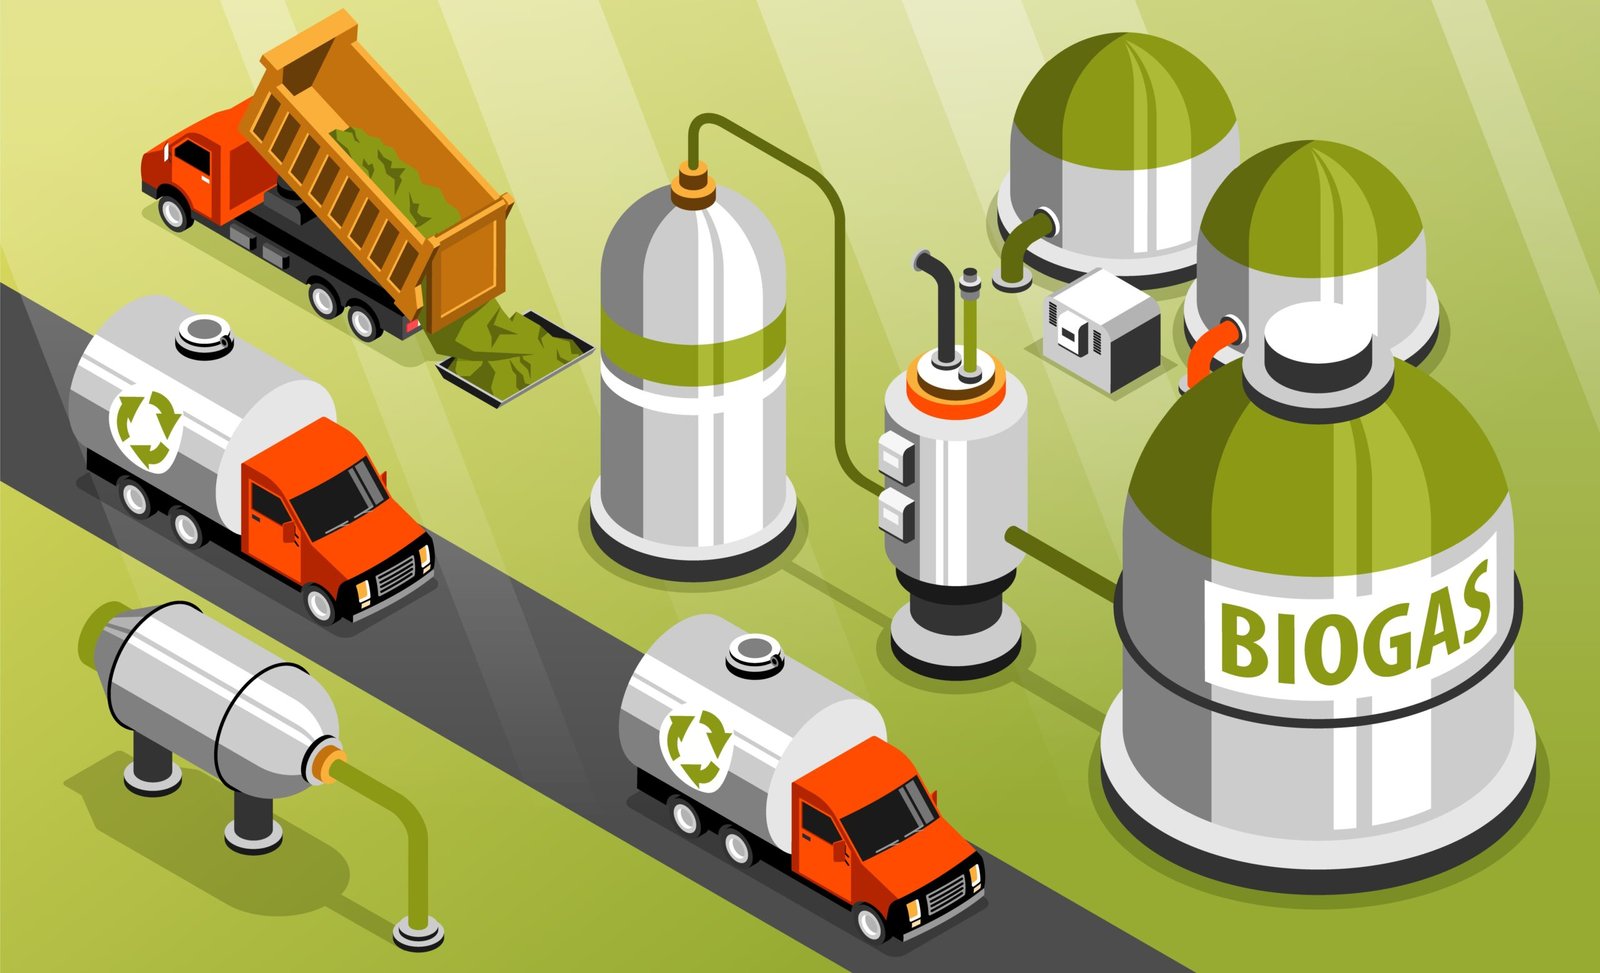 Biogas Isometric Background